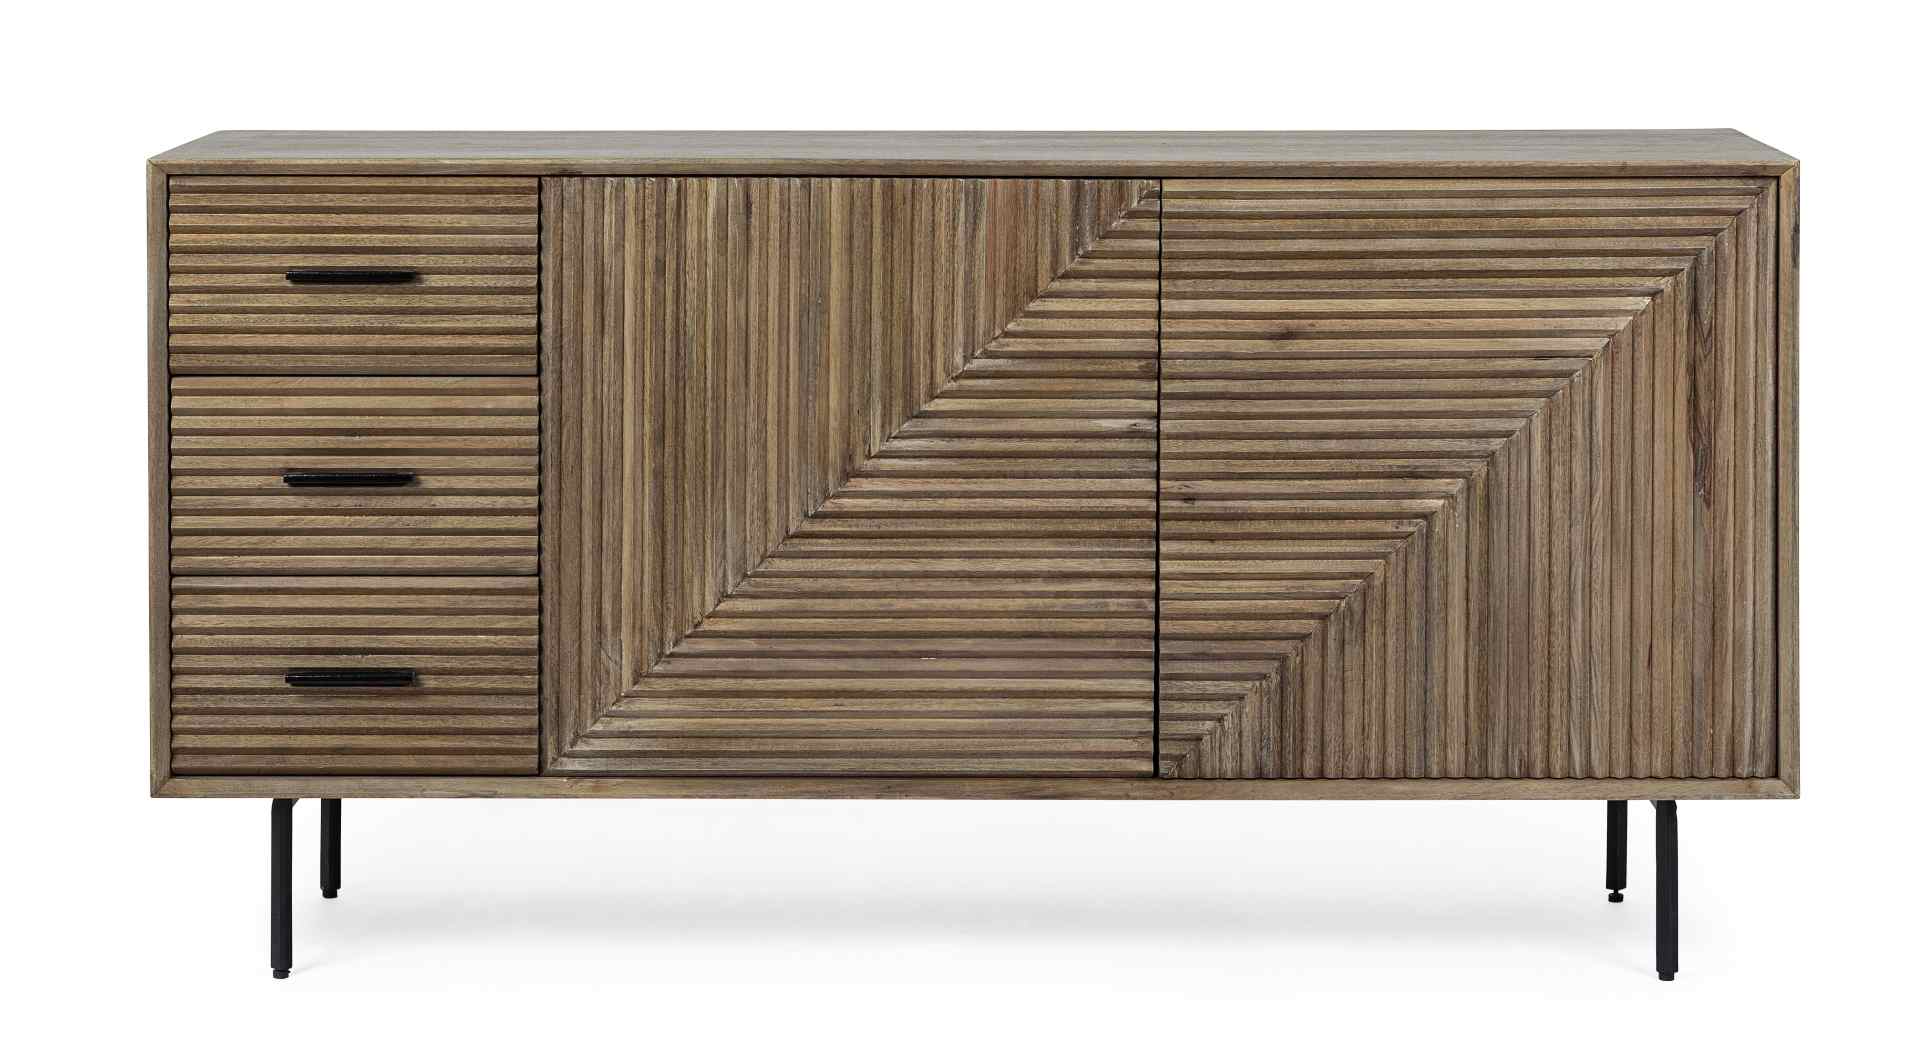 Das Sideboard Darsey überzeugt mit seinem klassischen Design. Gefertigt wurde es aus Mango-Holz, welches einen natürlichen Farbton besitzt. Das Gestell ist aus Metall und hat eine schwarze Farbe. Das Sideboard verfügt über zwei Türen und drei Schubladen. 